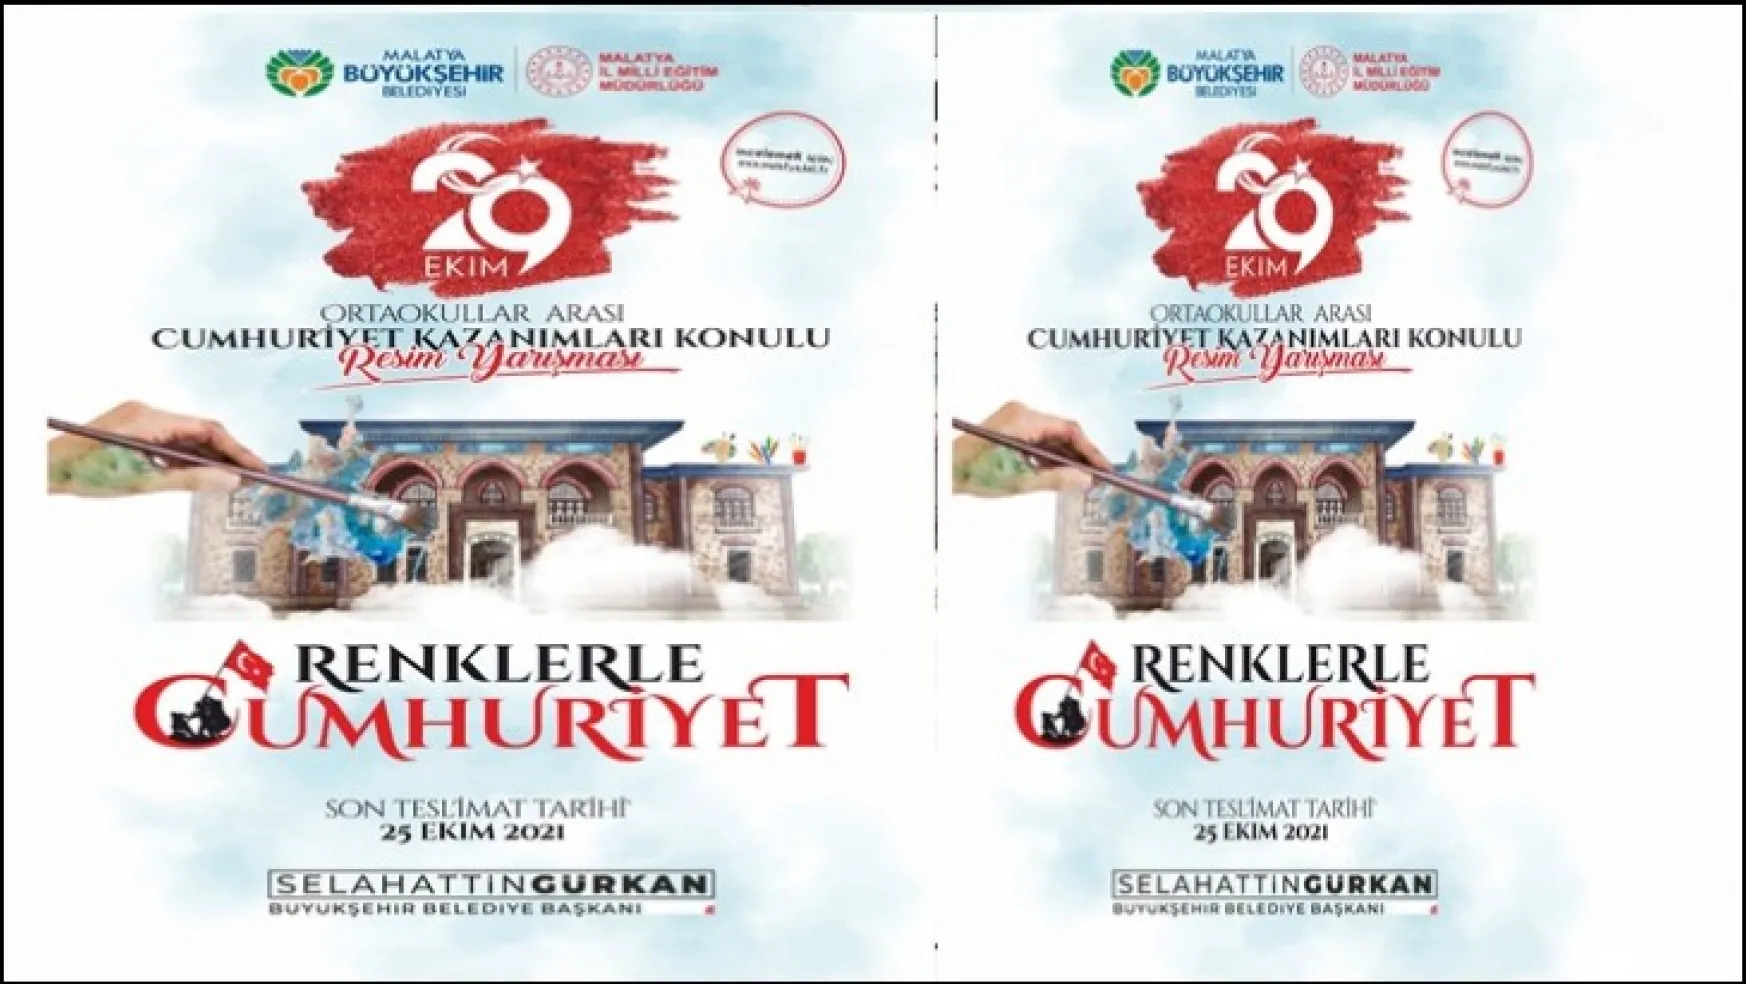 Malatya Büyükşehir Belediyesi 'Renklerle Cumhuriyet' İsimli Resim Yarışması Düzenliyor